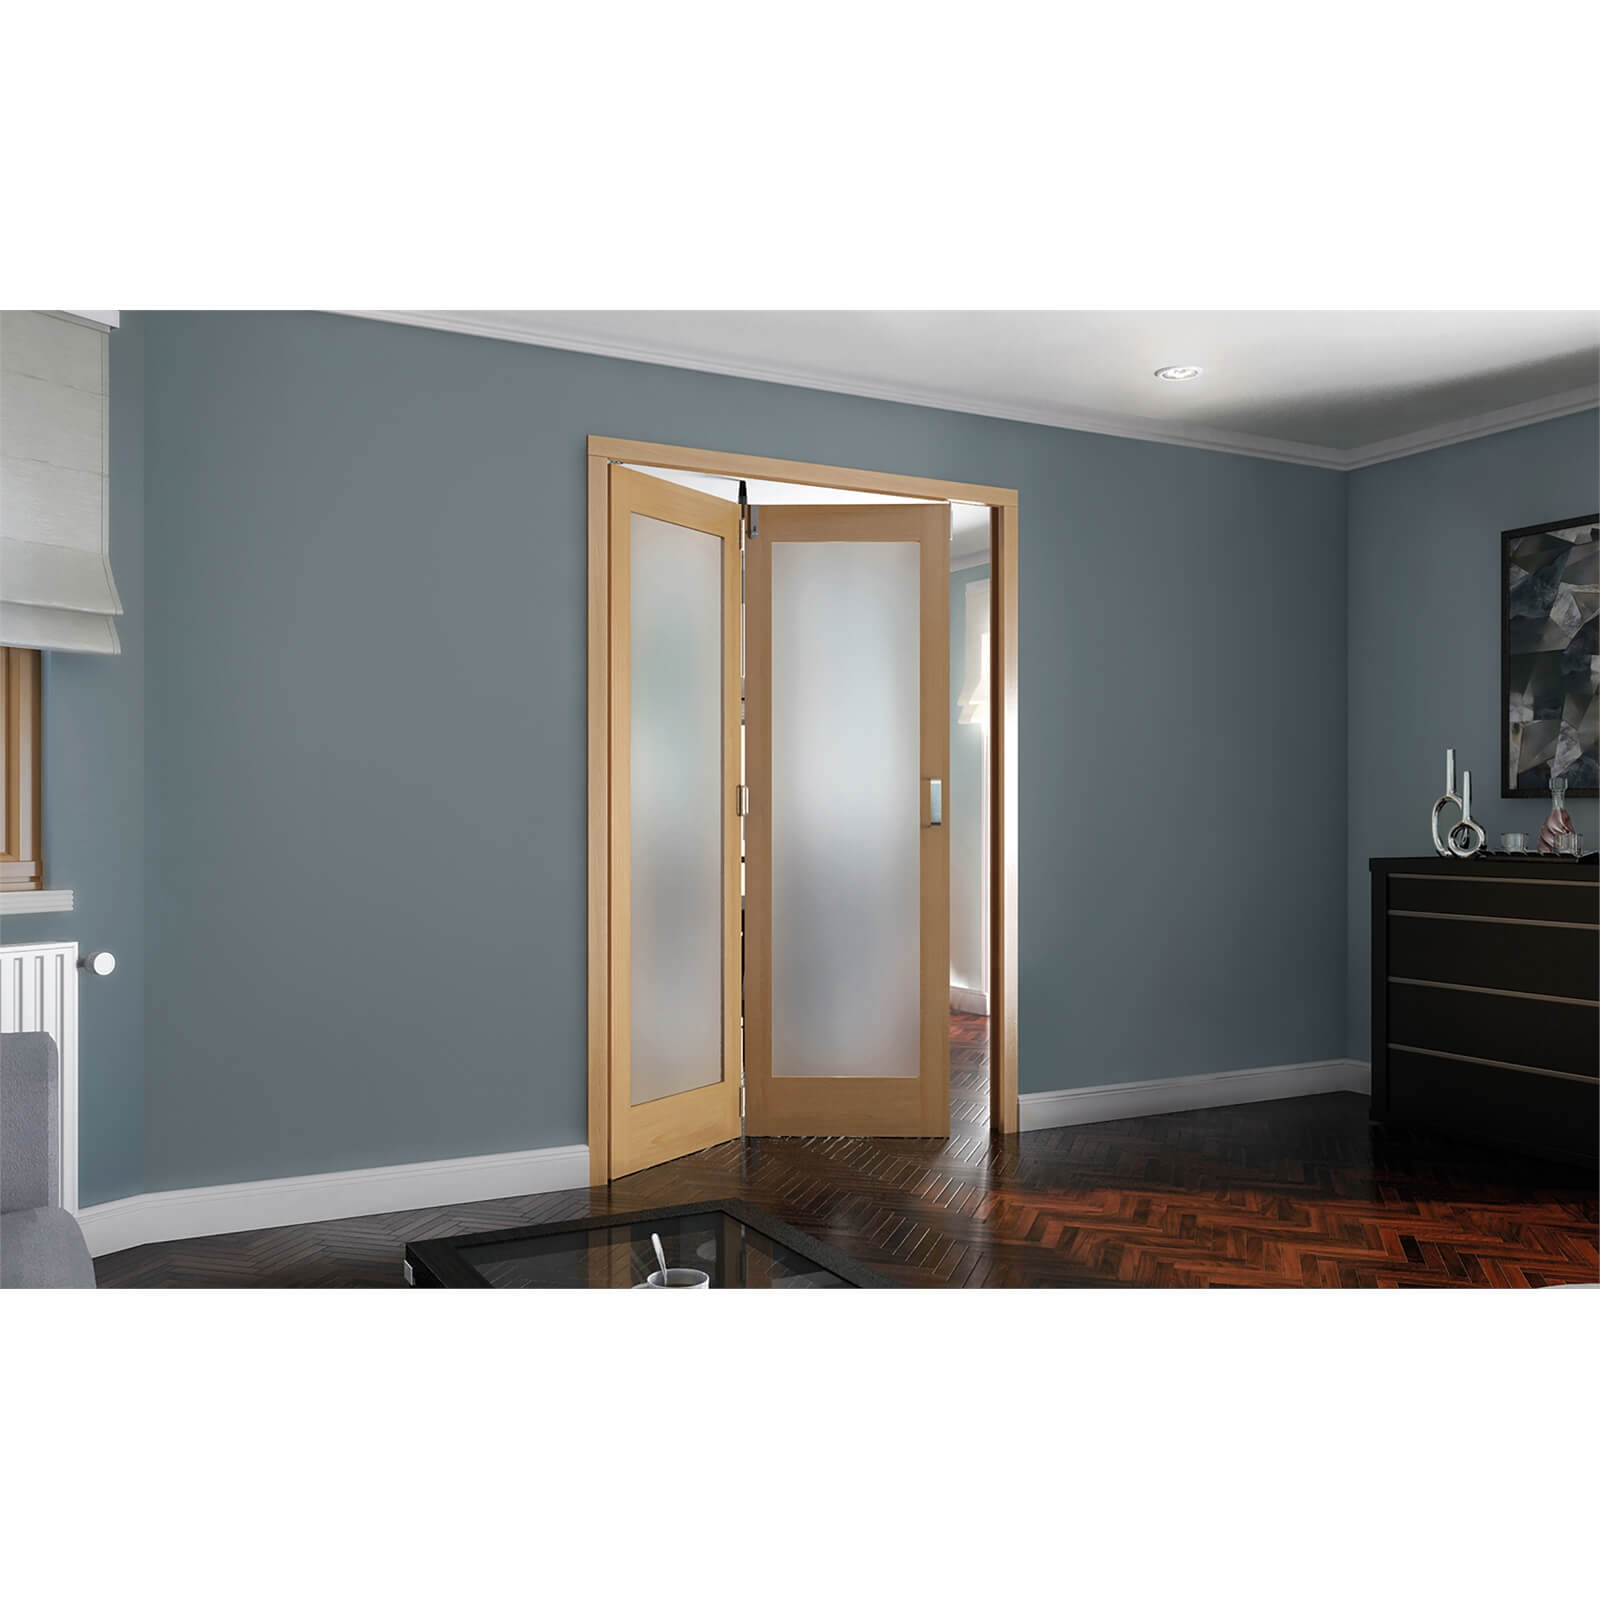 Photo of Shaker Oak 1 Light Obscure Glazed Interior Folding Doors 2 X 0 2047 X 1319mm